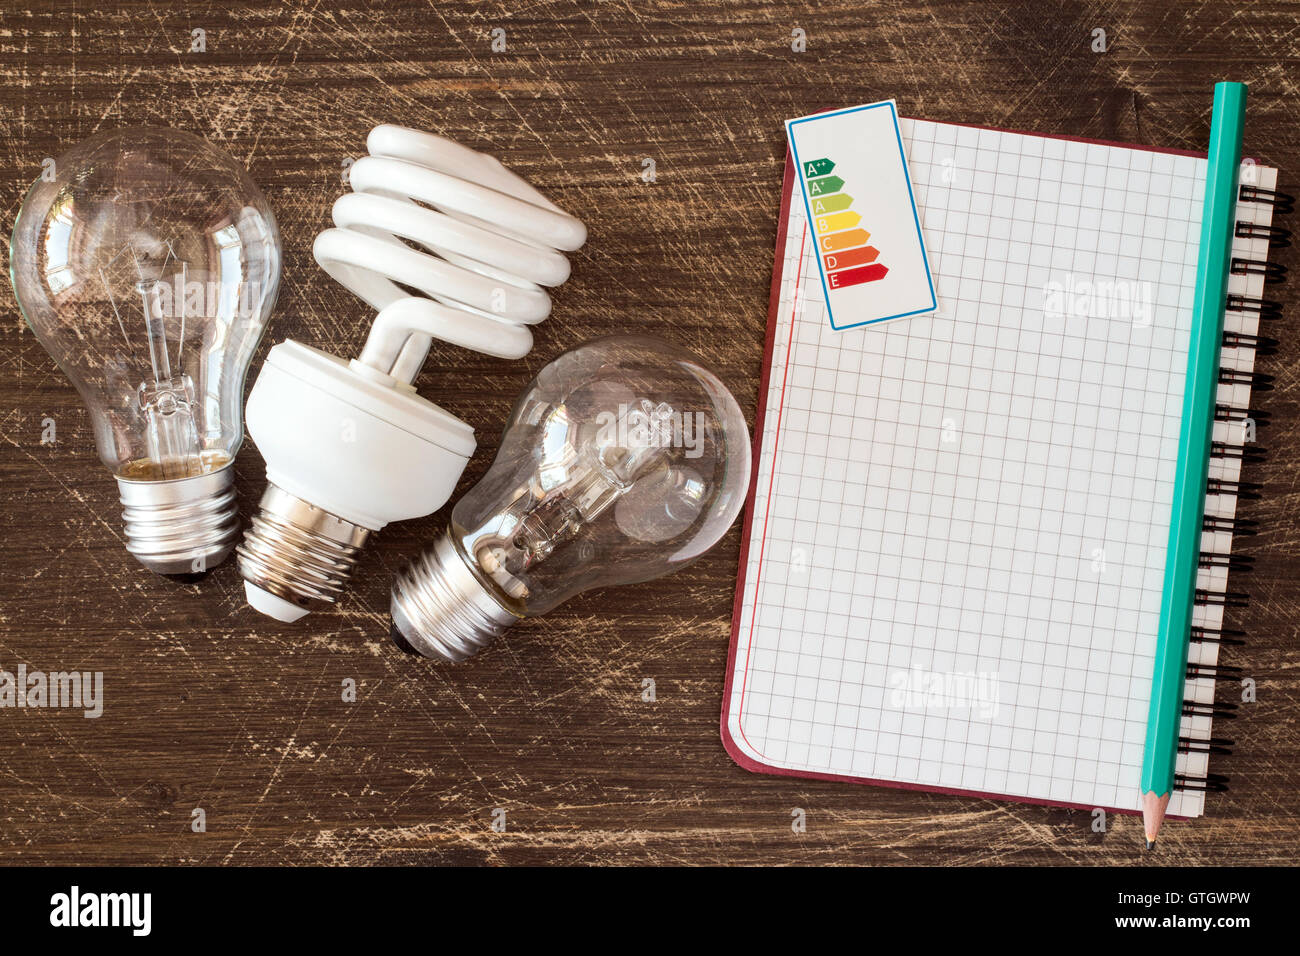 Tres diferentes bombillas y portátil con la etiqueta de eficiencia energética Foto de stock